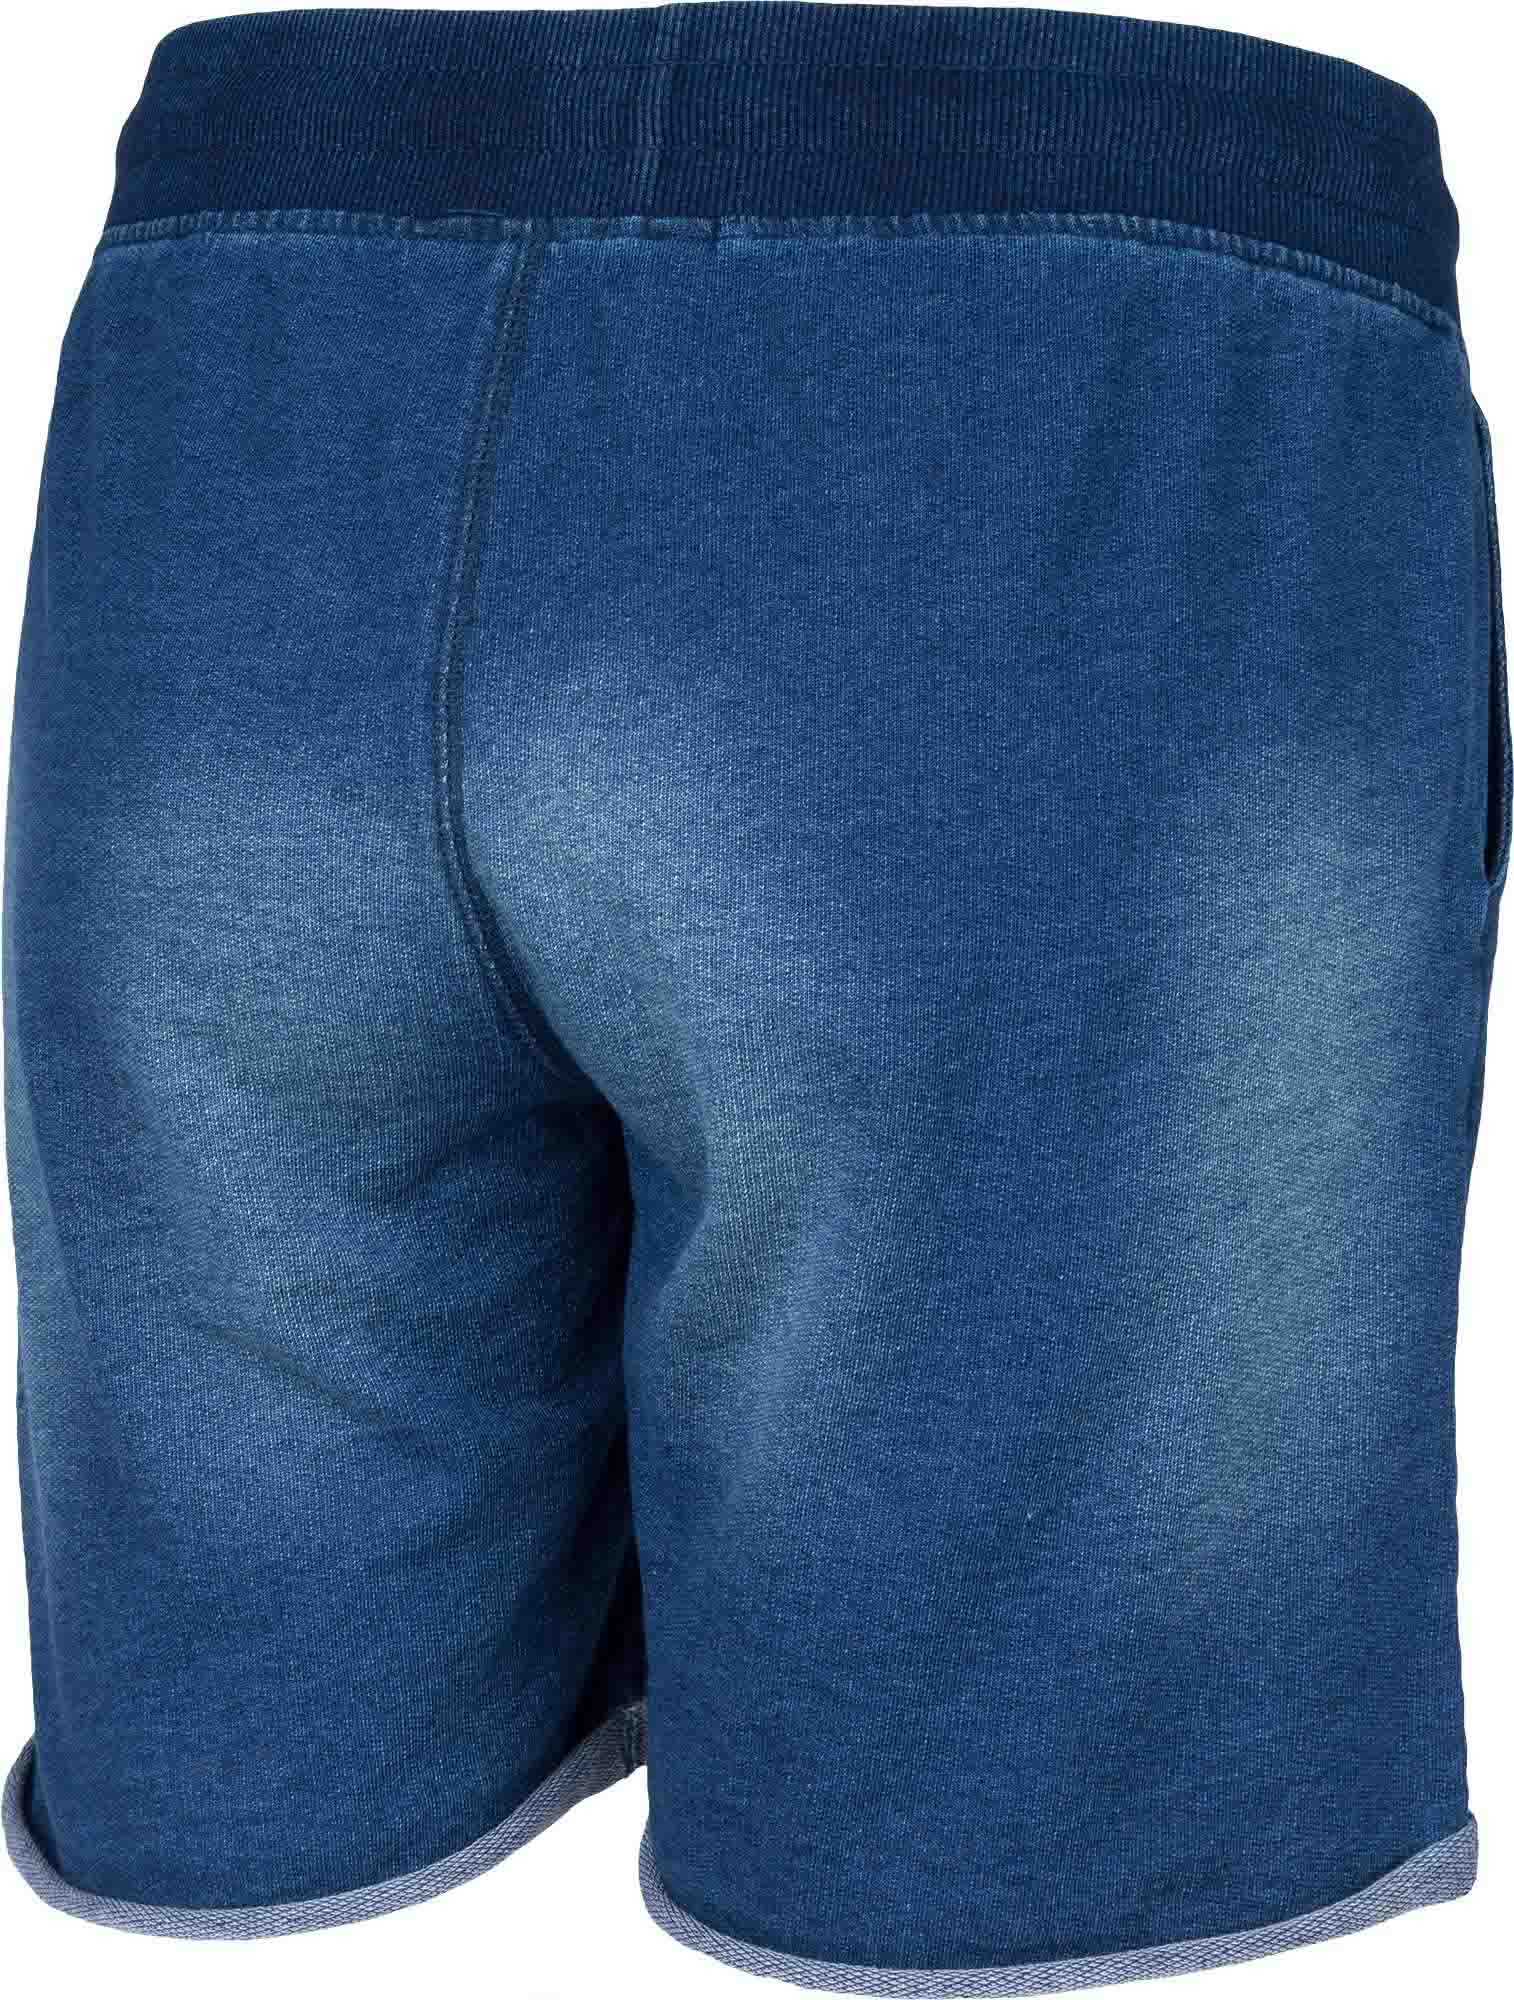 Dámské šortky džínového vzhledu